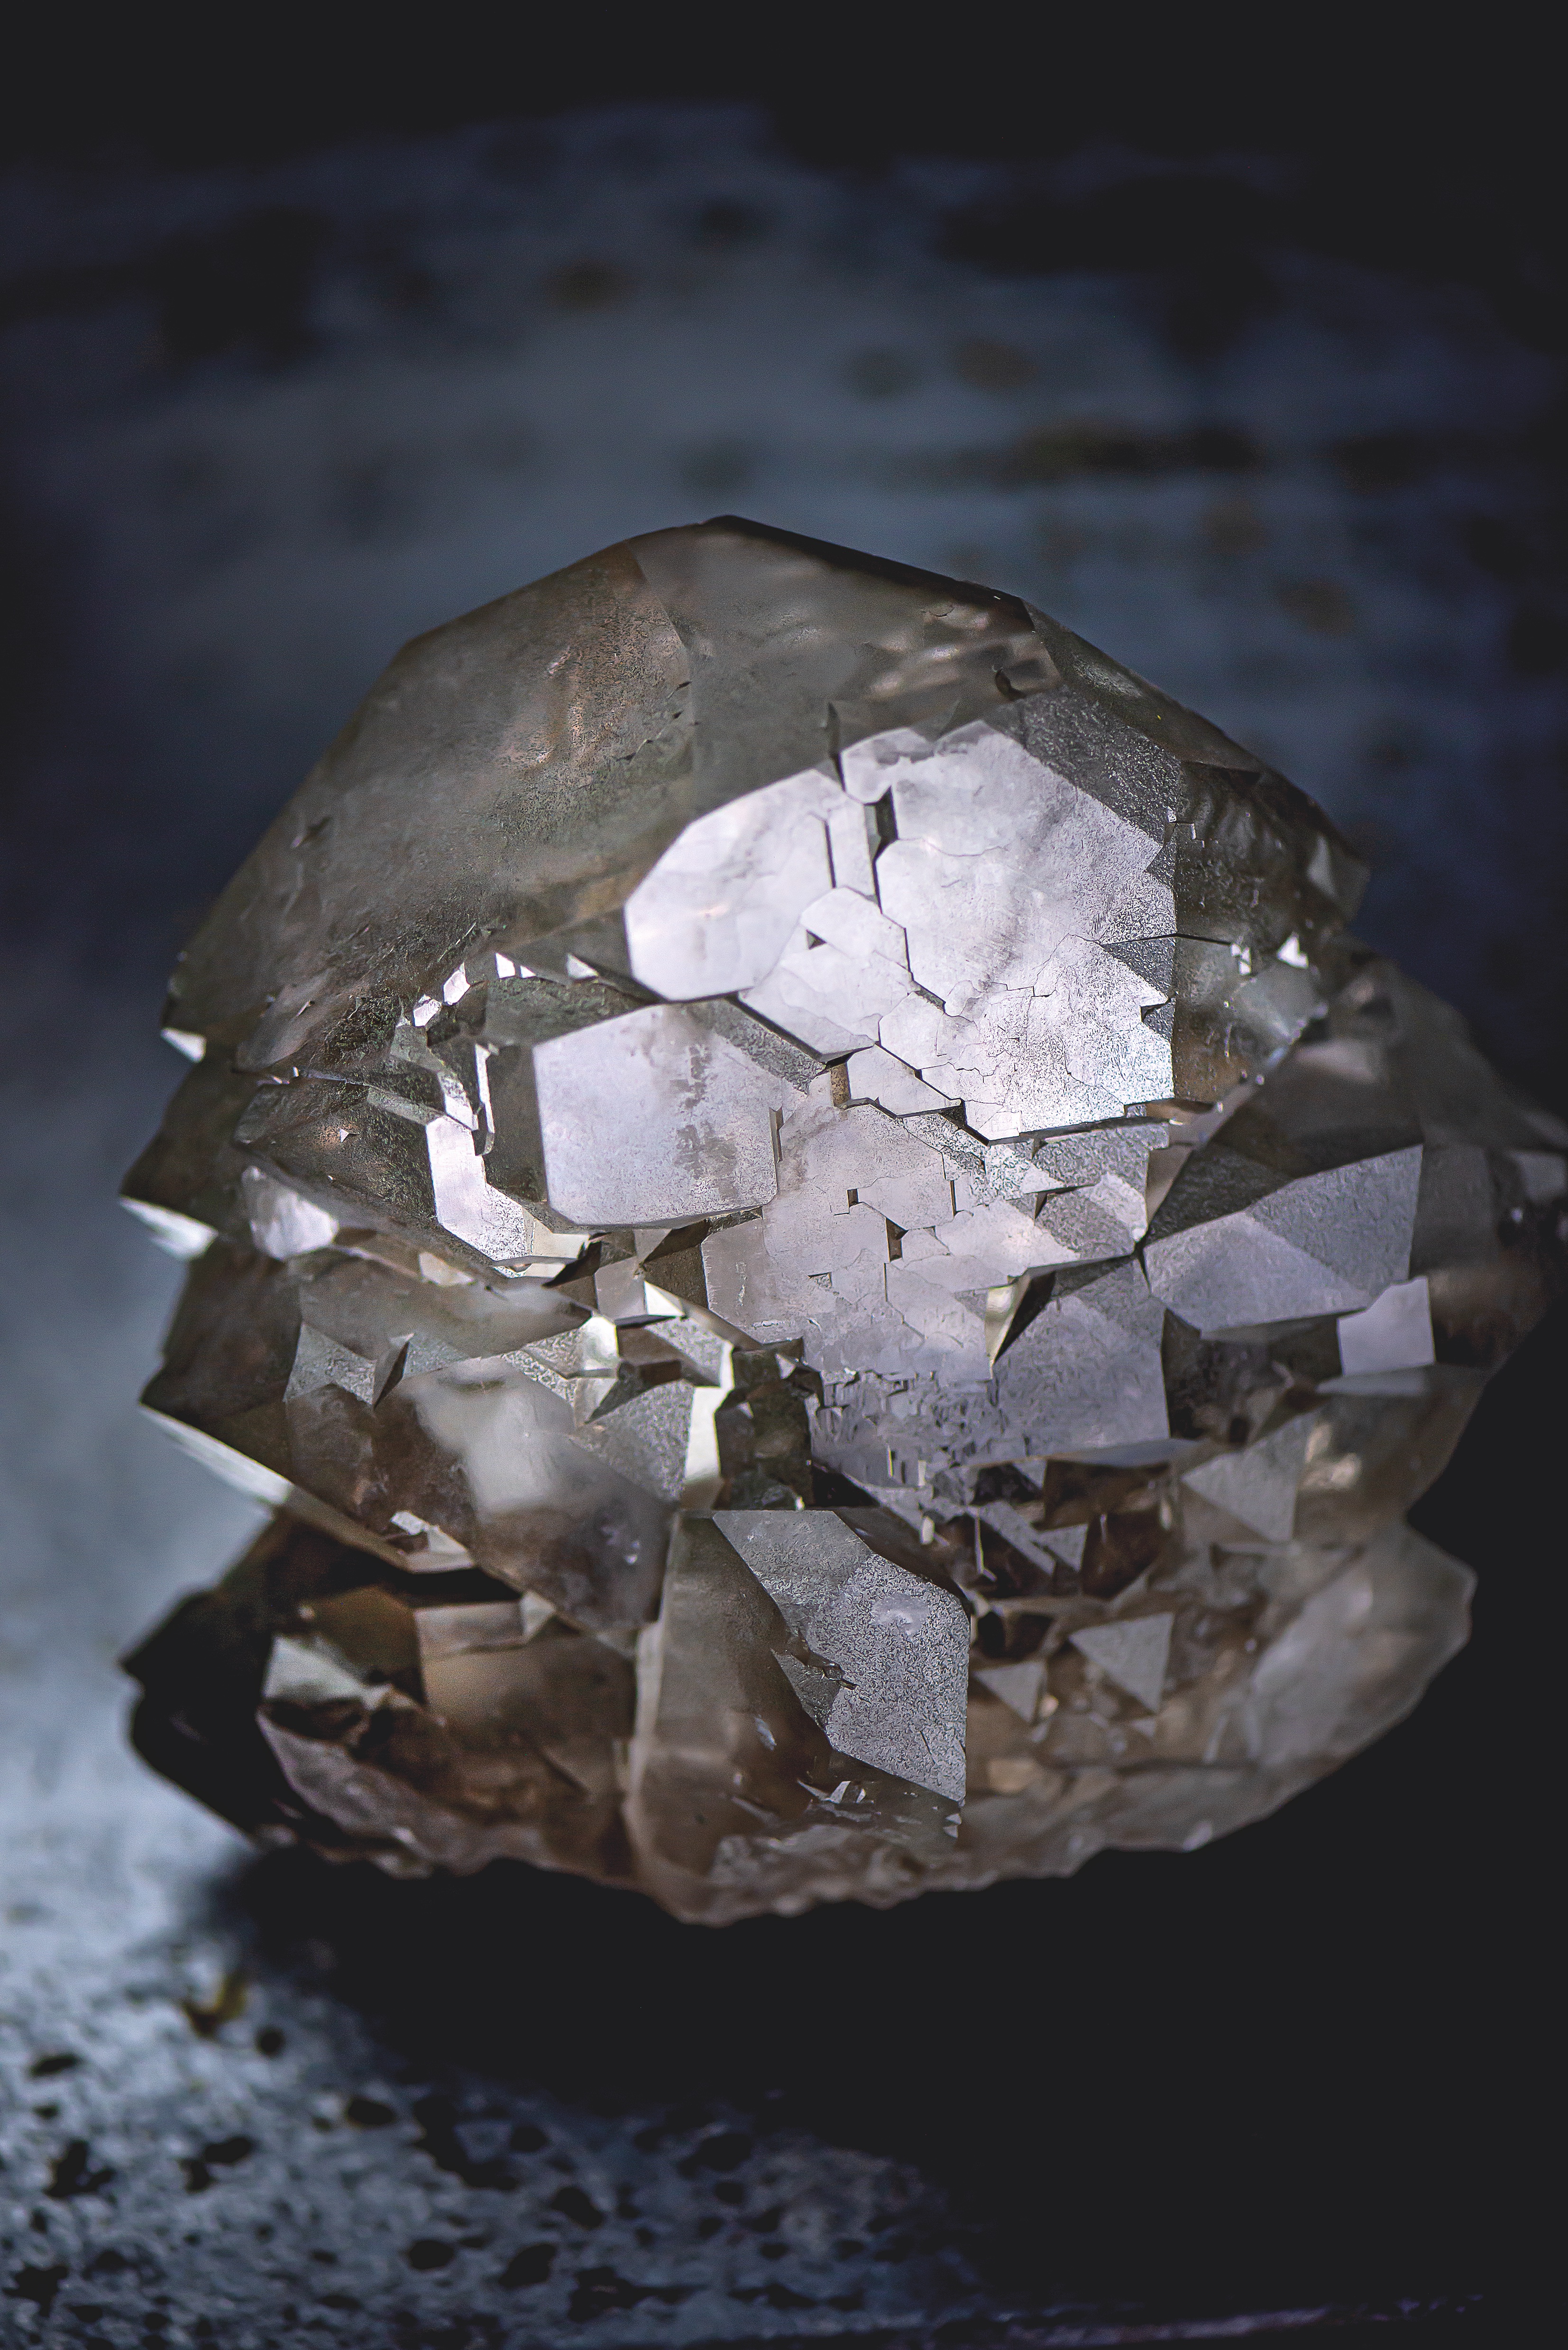 Les cristaux autour du Mont-Blanc ont cet aspect fumé caractéristique à cause de la radioactivité du granit environnant. © Thierry Berguerand